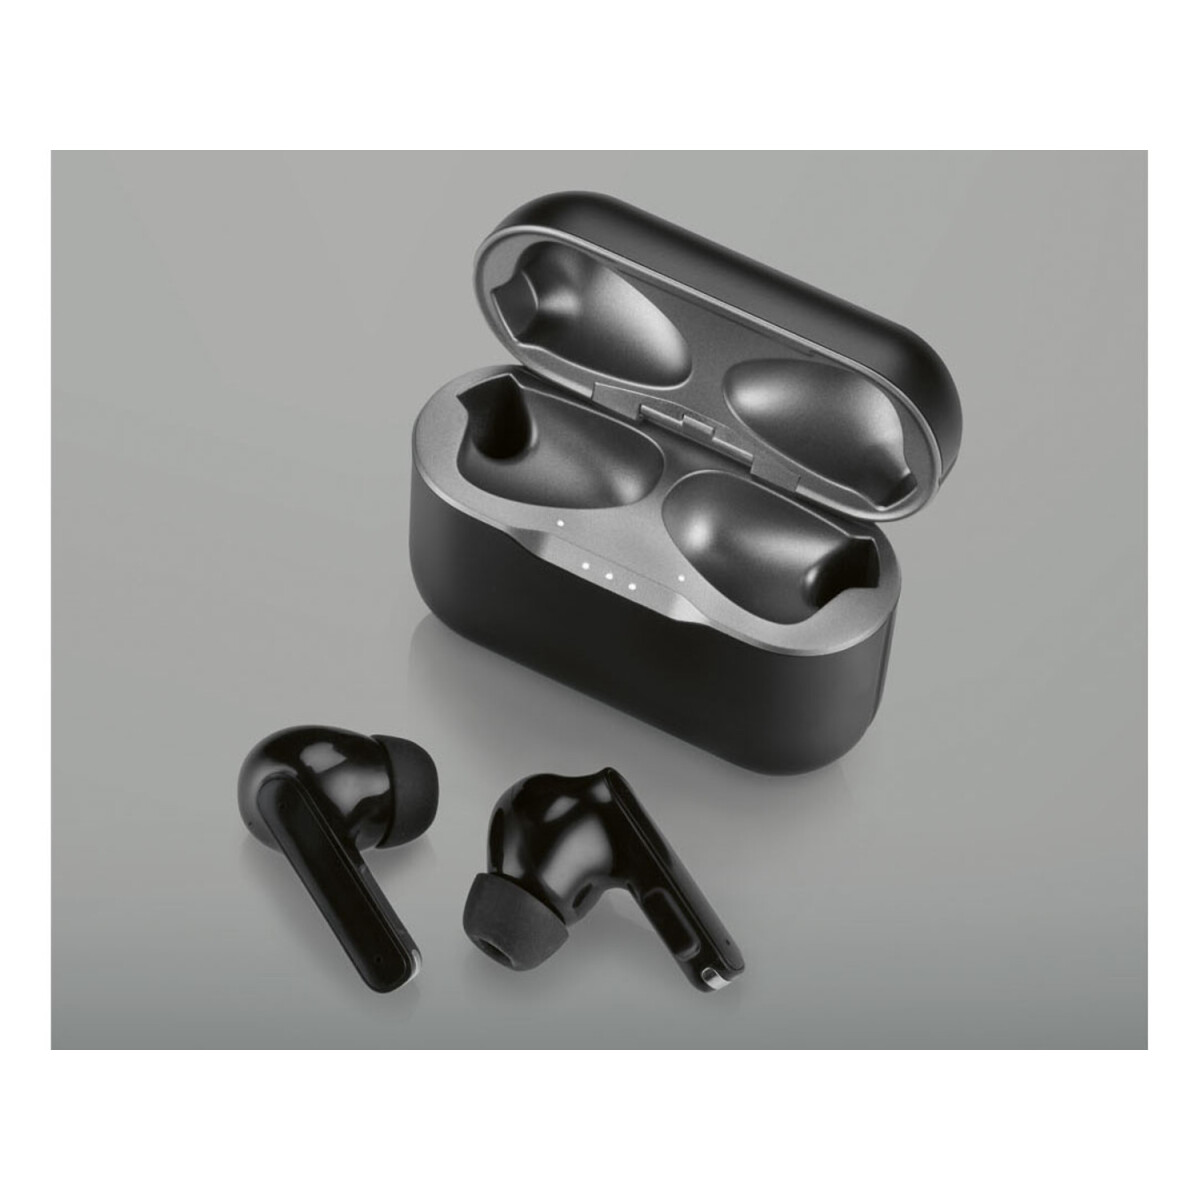 True - In sehr Bluetooth Ear , B2« Ladecase ANC, B-Ware 15,99 mit Kopfhörer, € »STSK SILVERCREST® Wireless A4